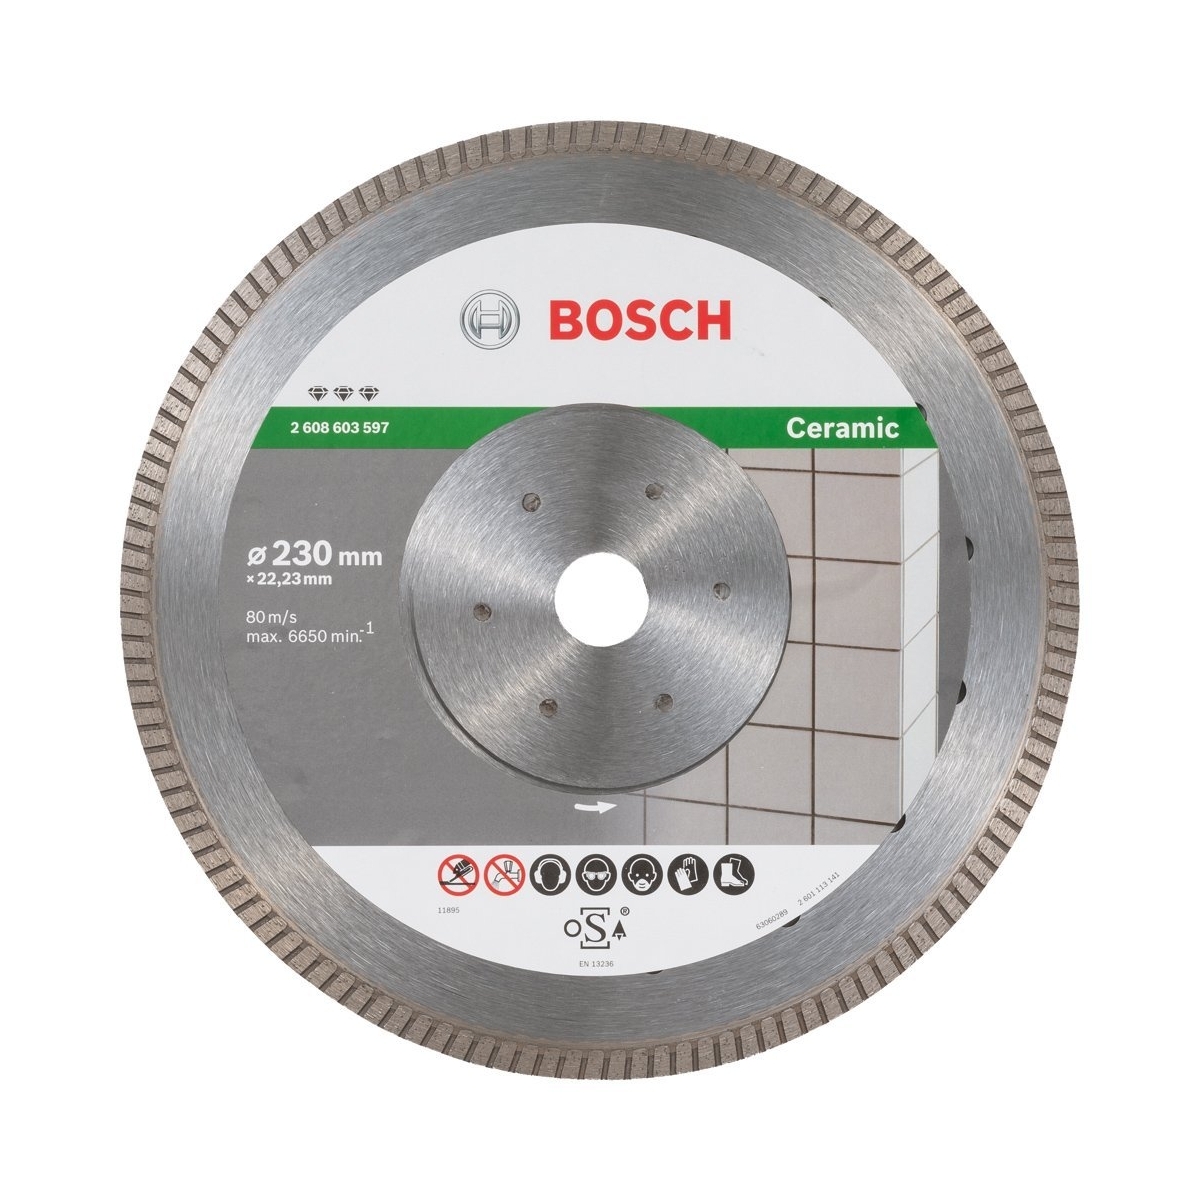 Bosch Diamond Disc Best Ceramic Turbo 2608603597 - Compre discos Bosch a preços excelentes.